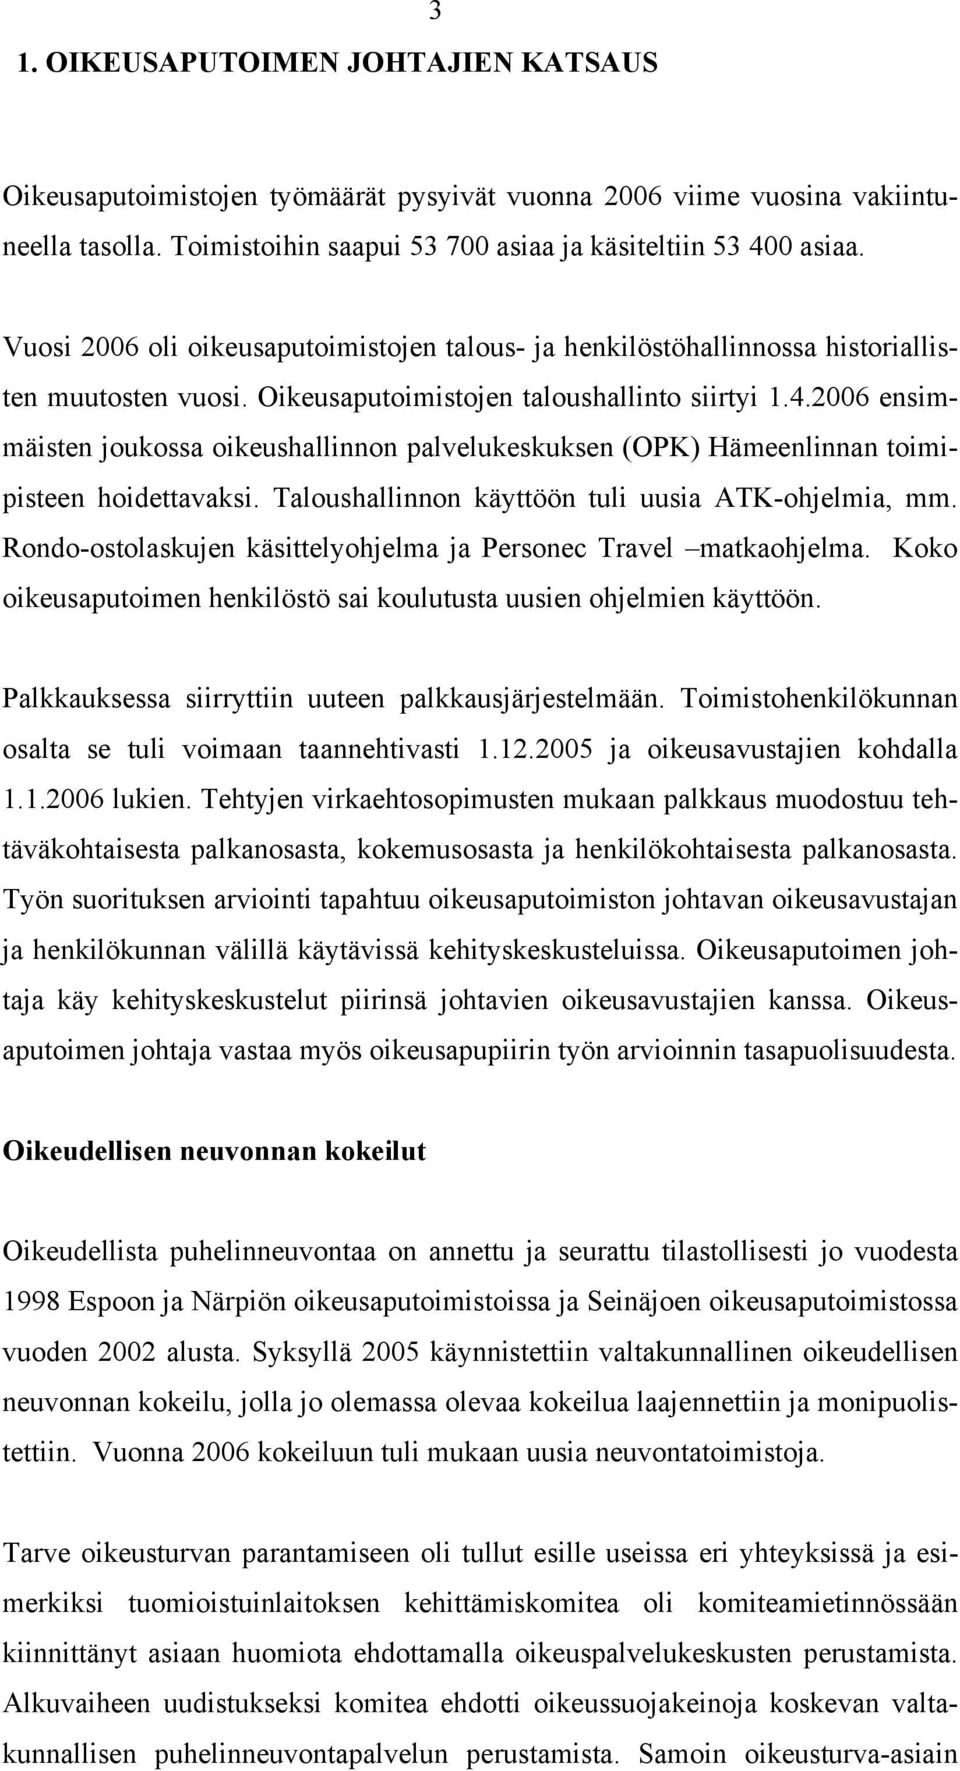 2006 ensimmäisten joukossa oikeushallinnon palvelukeskuksen (OPK) Hämeenlinnan toimipisteen hoidettavaksi. Taloushallinnon käyttöön tuli uusia ATK-ohjelmia, mm.